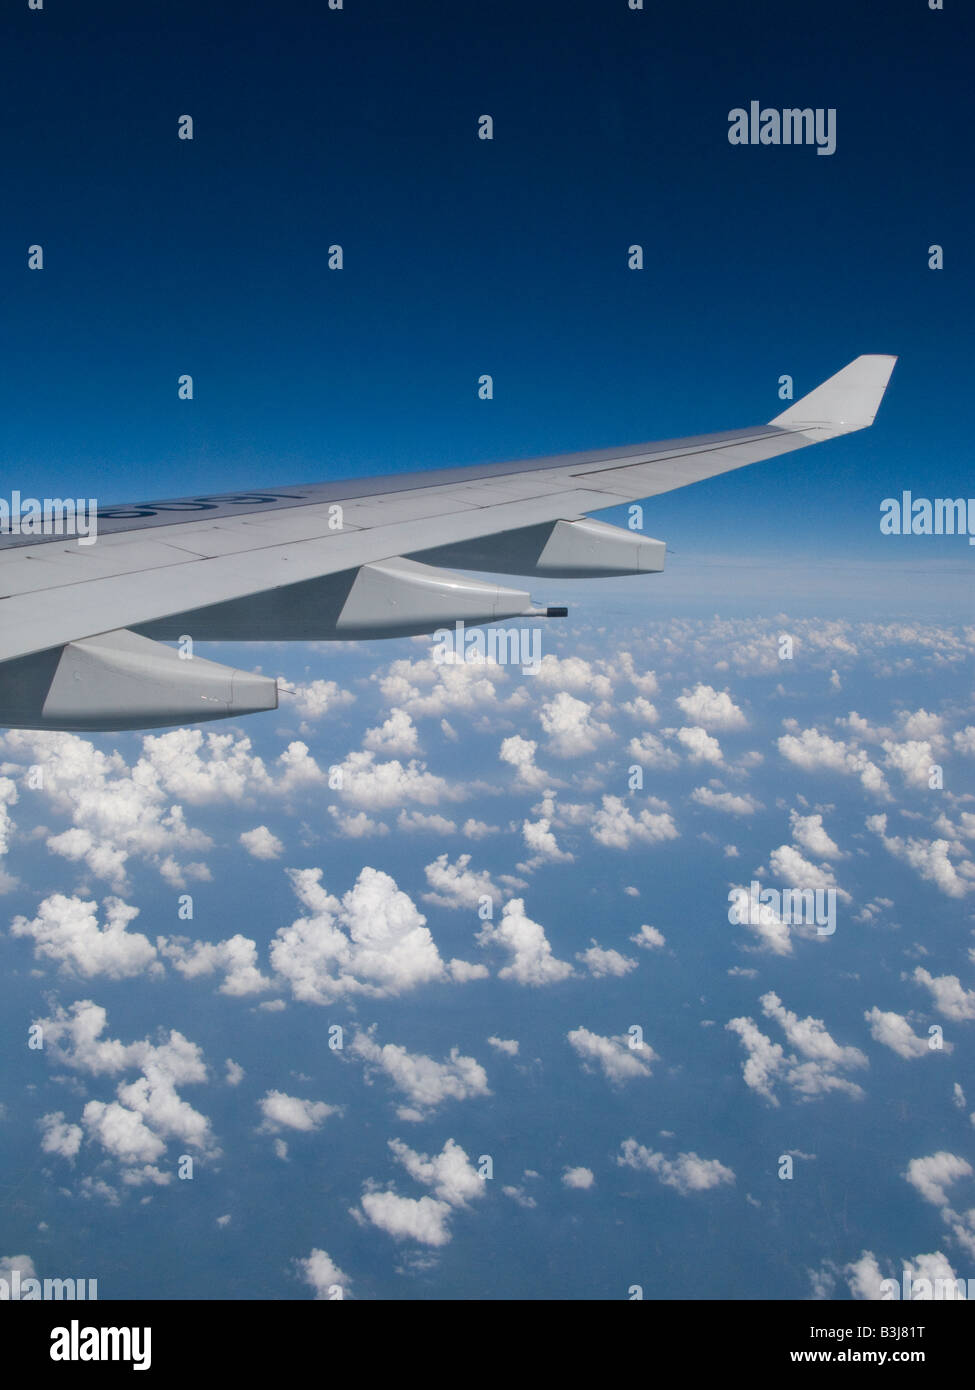 Ala de avión a través de un azul cielo nublado tomadas a través de la ventana de avión volando desde Hong Kong hasta Beijing, China Foto de stock